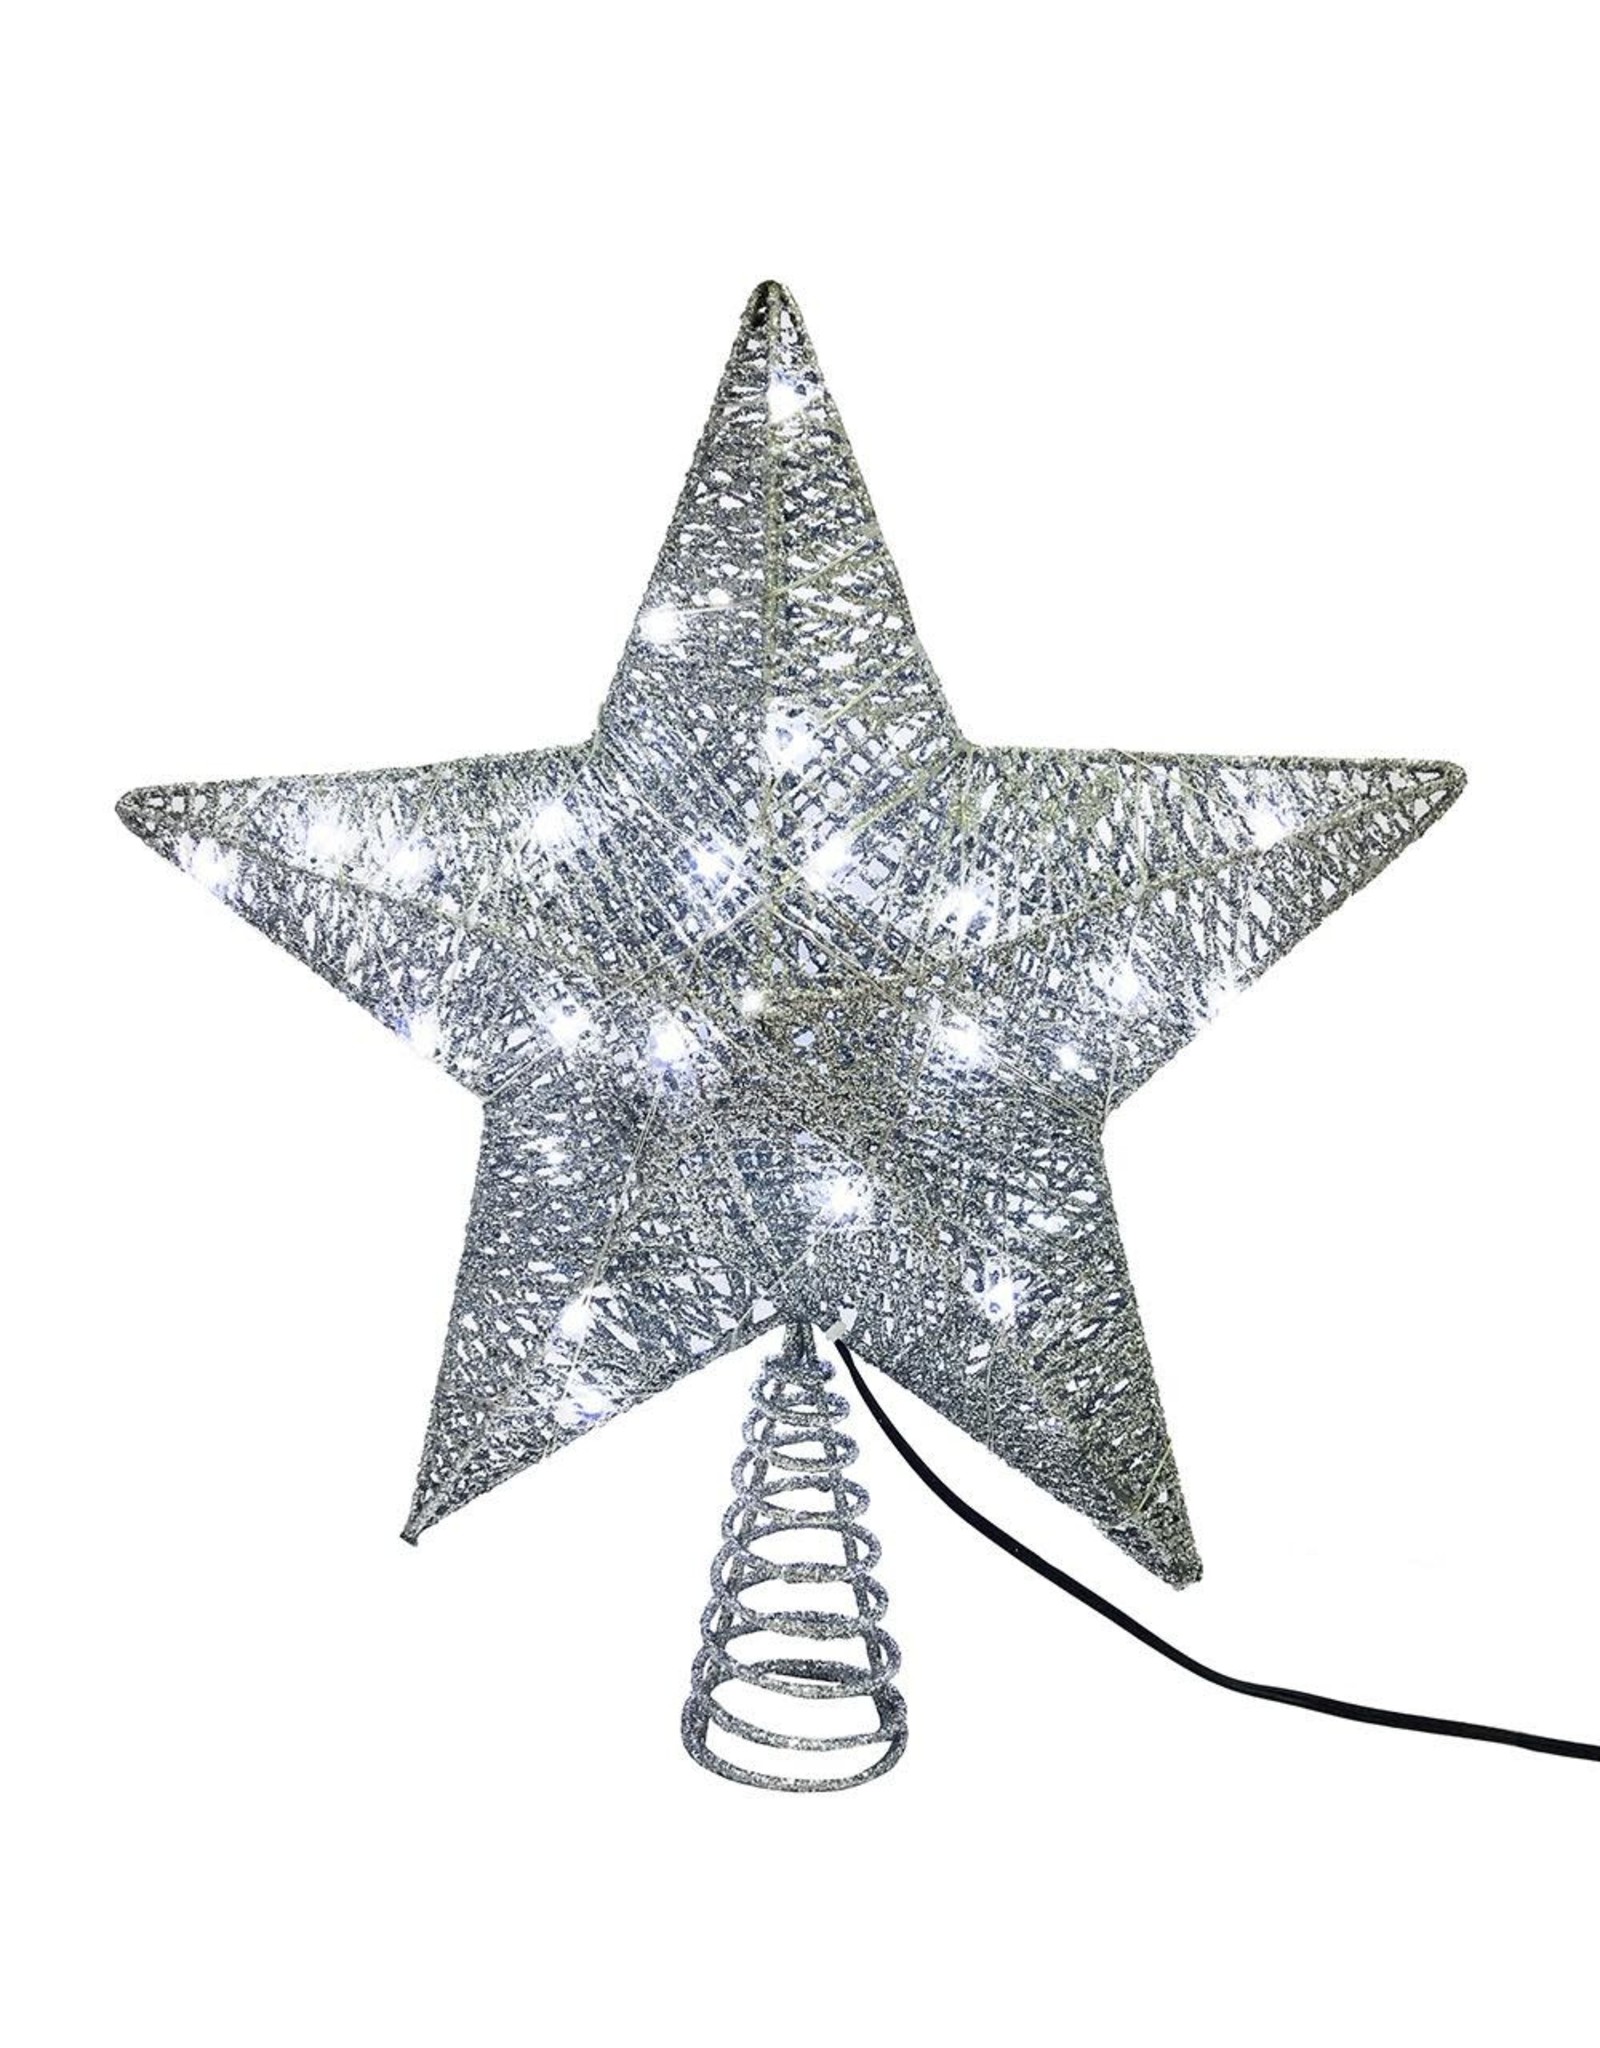 Kurt Adler Silver Star Christmas Tree Topper 10 Inch W 45 LED Lights